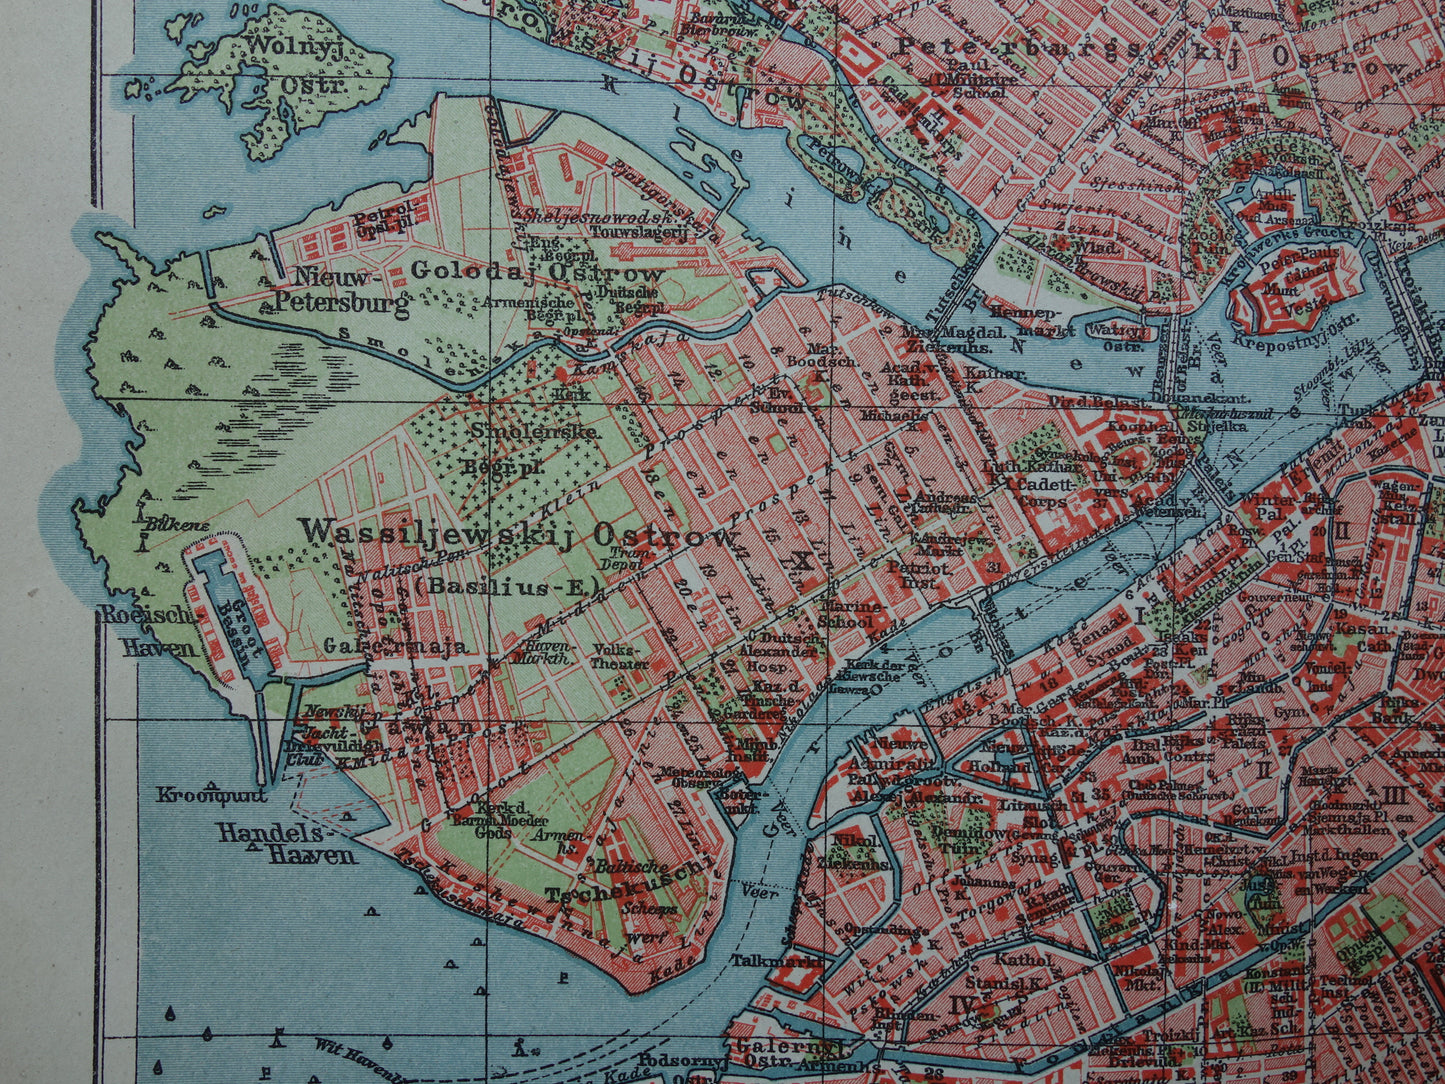 St Petersburg oude plattegrond Originele antieke Nederlandse kaart van Sint Petersburg Rusland uit 1921 vintage historische kaarten